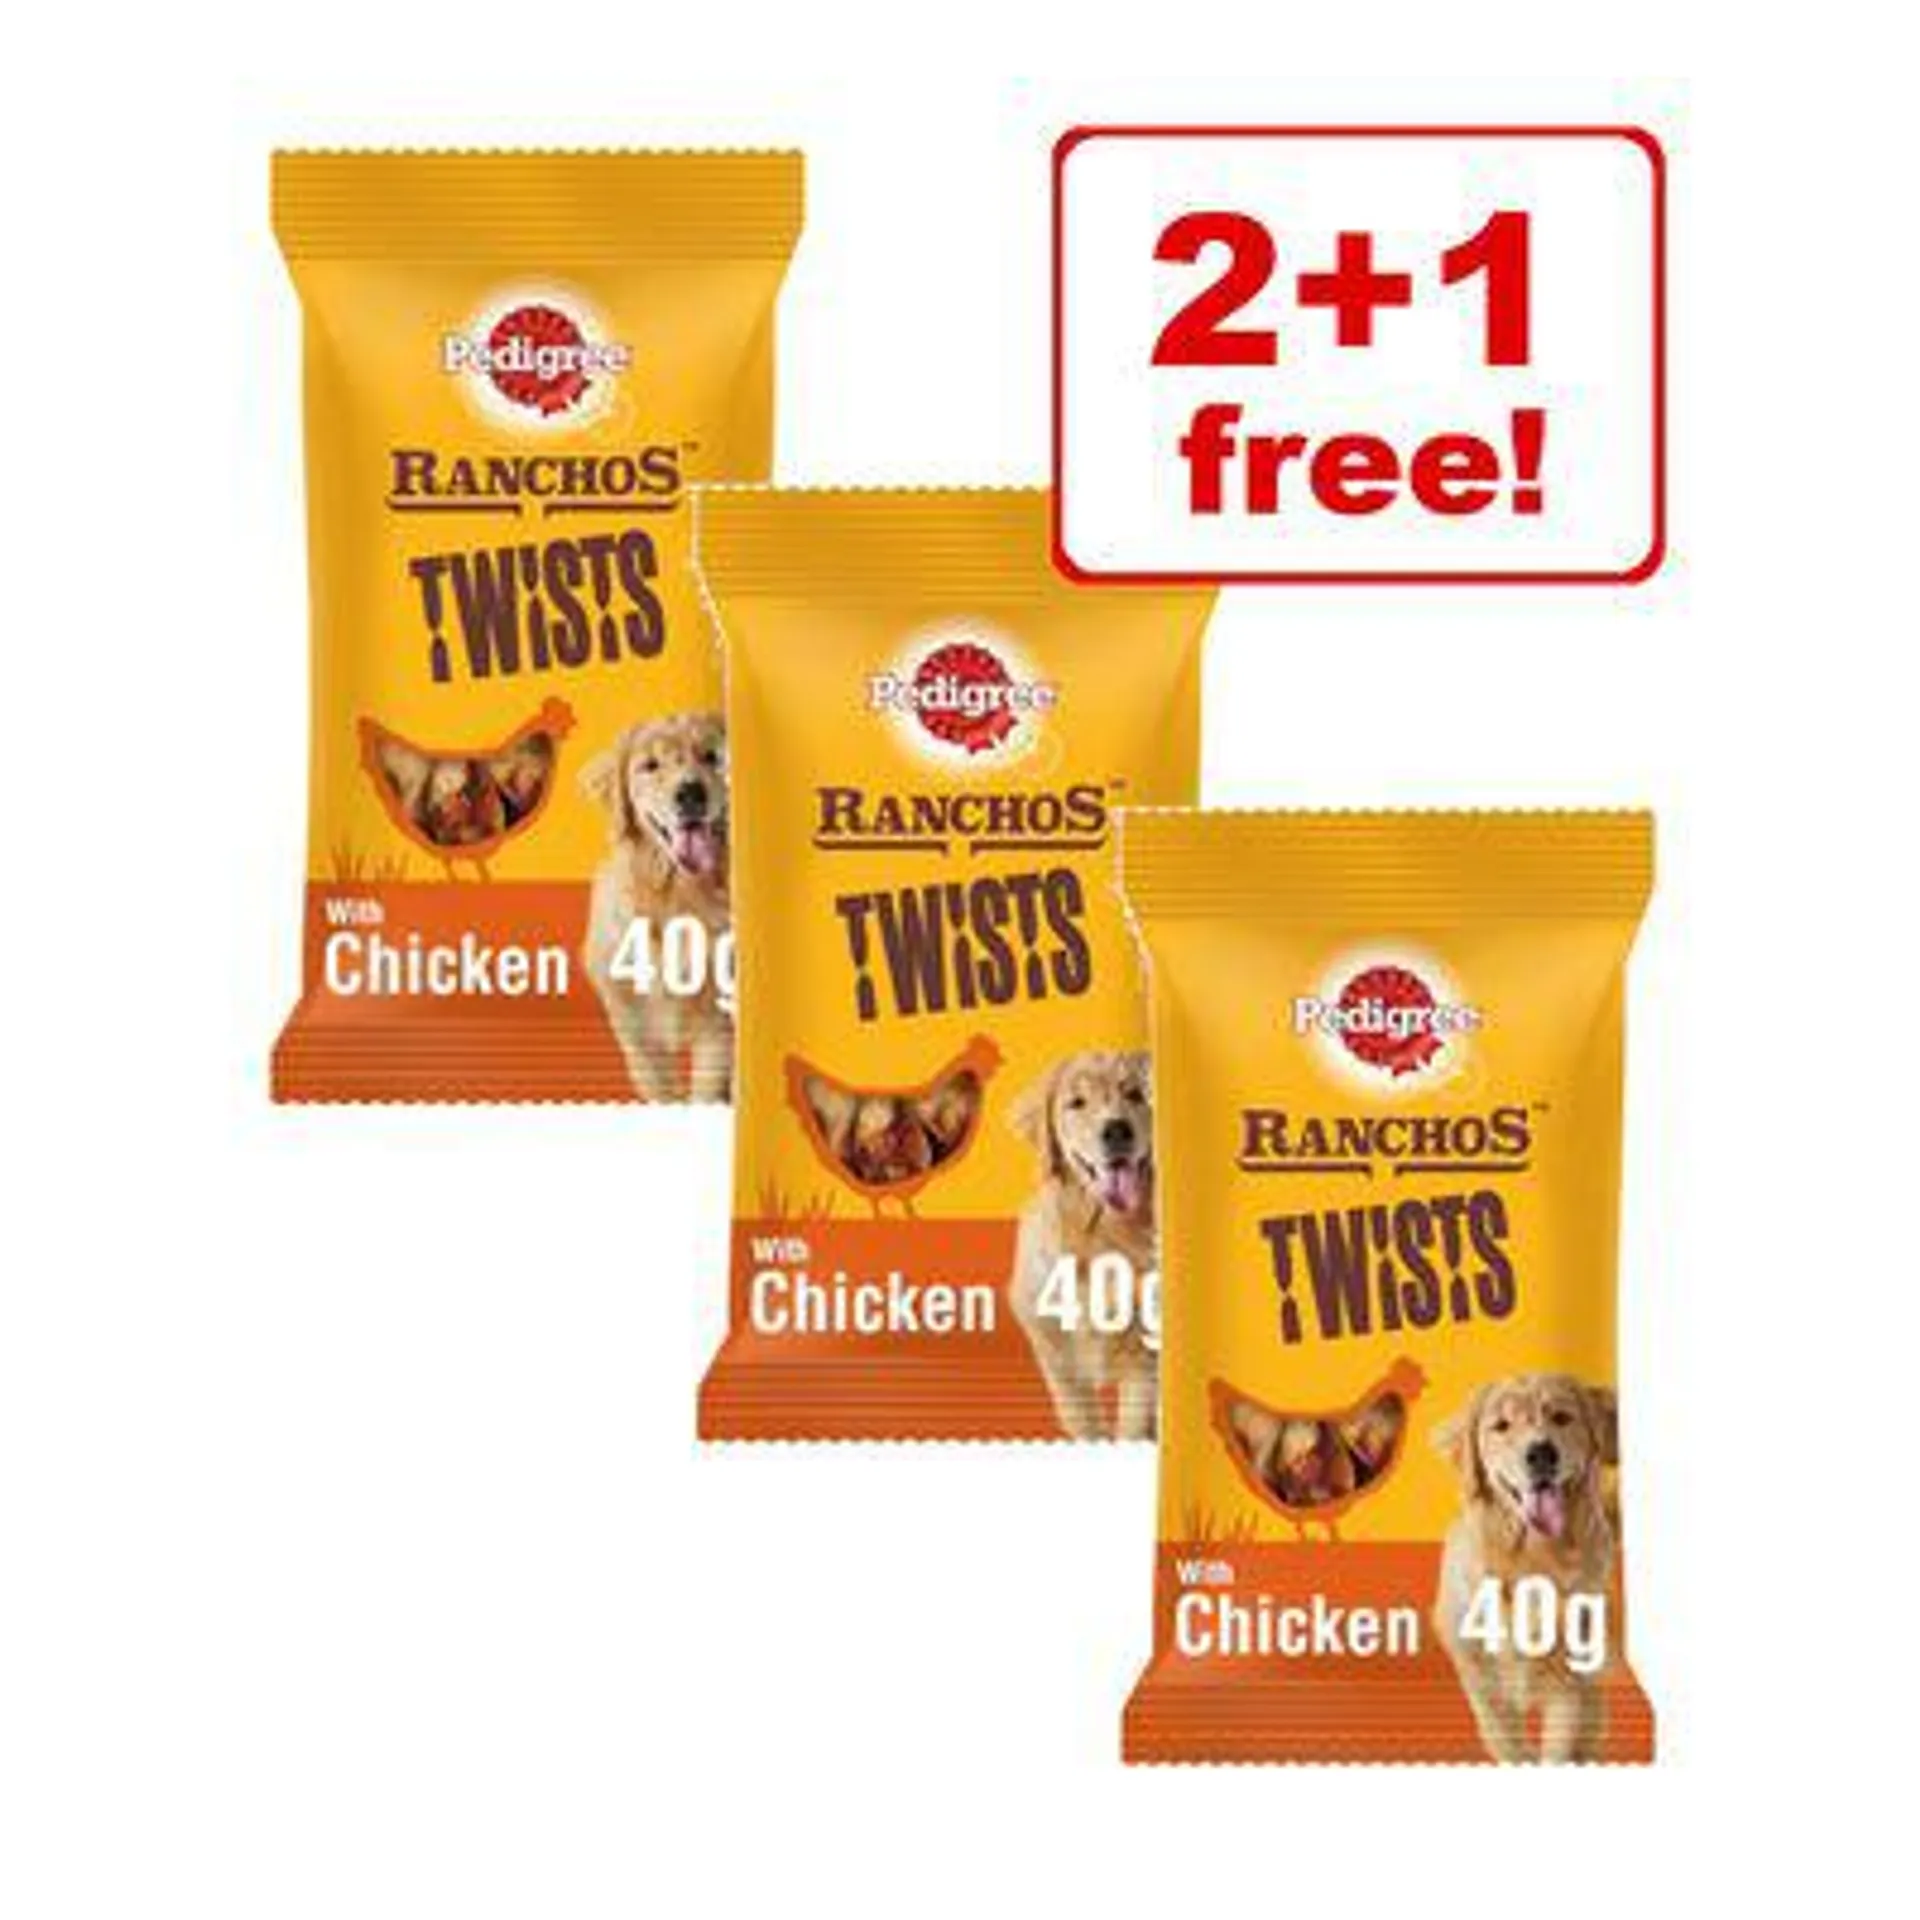 3 x Pedigree Dog Snacks - 2 + 1 Free! *